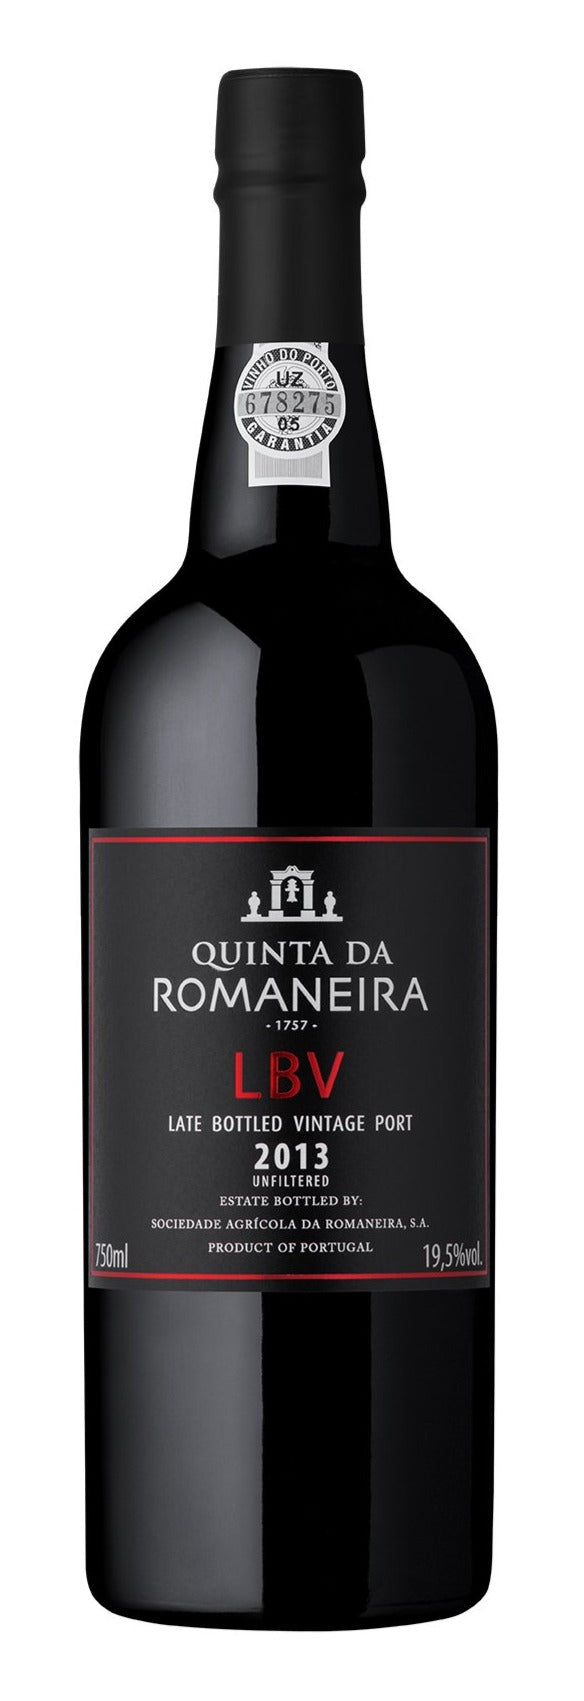 Quinta Da Romaneira Late Bottle Vintage 2014 (LBV)